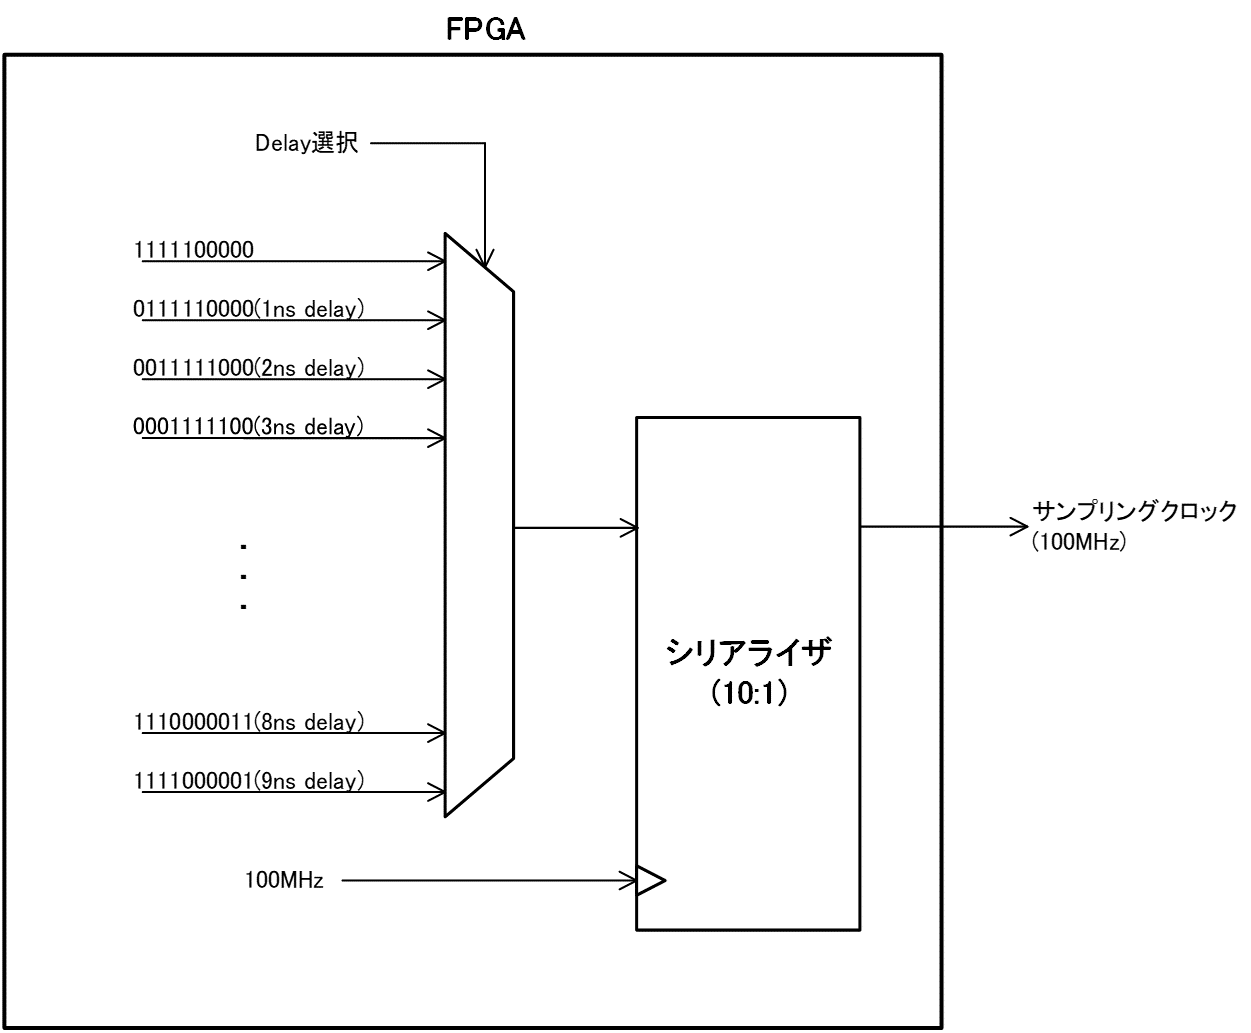 FPGAによる正確性向上